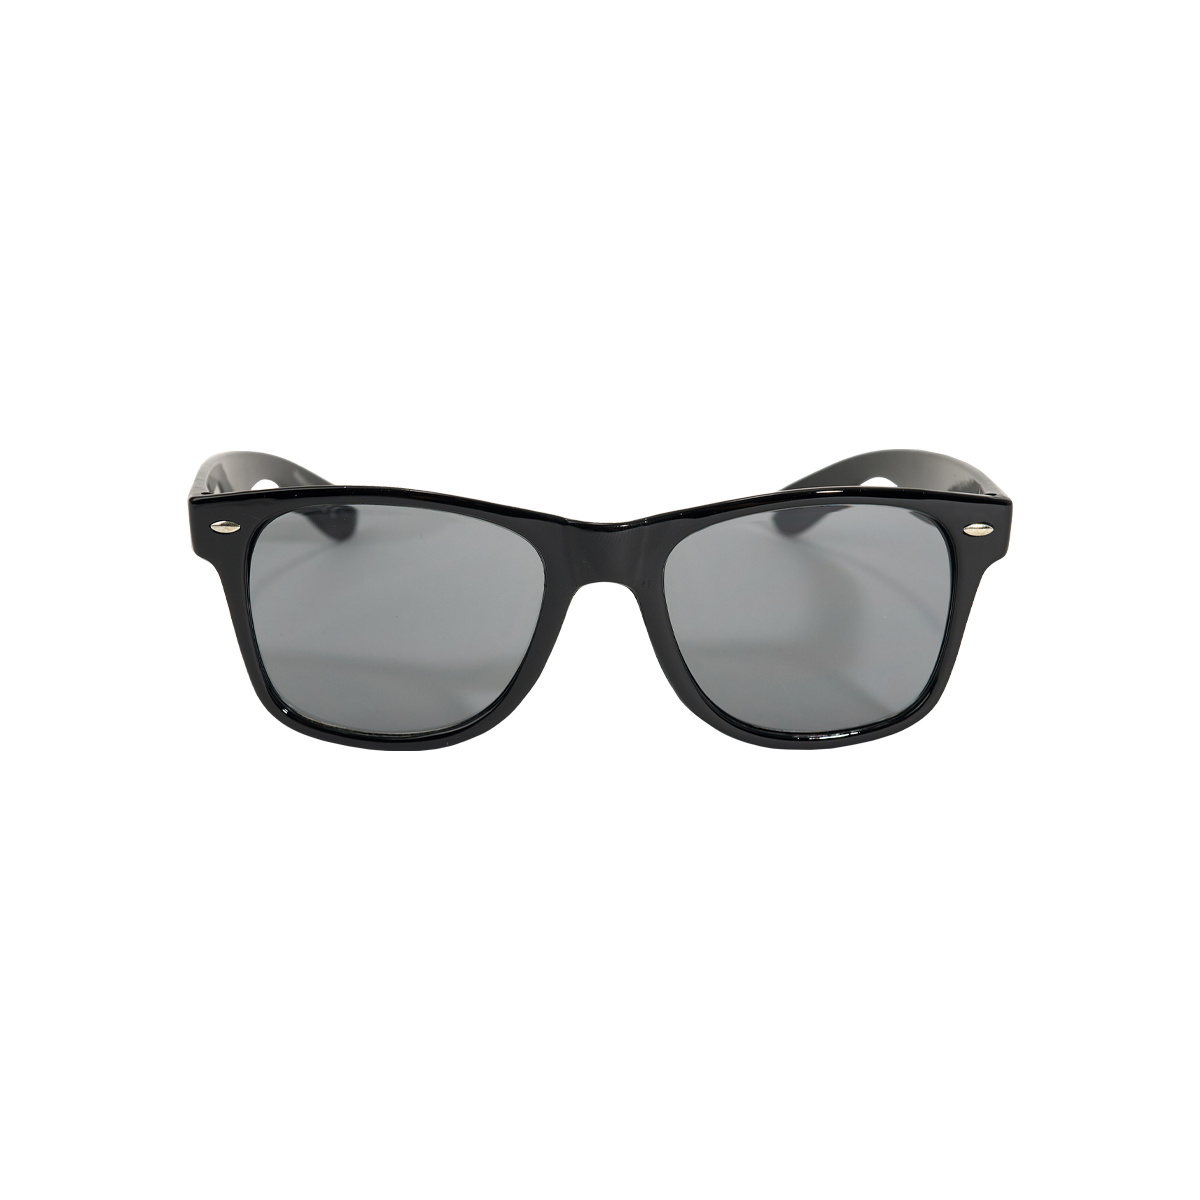 Topfanz Sunglasses black